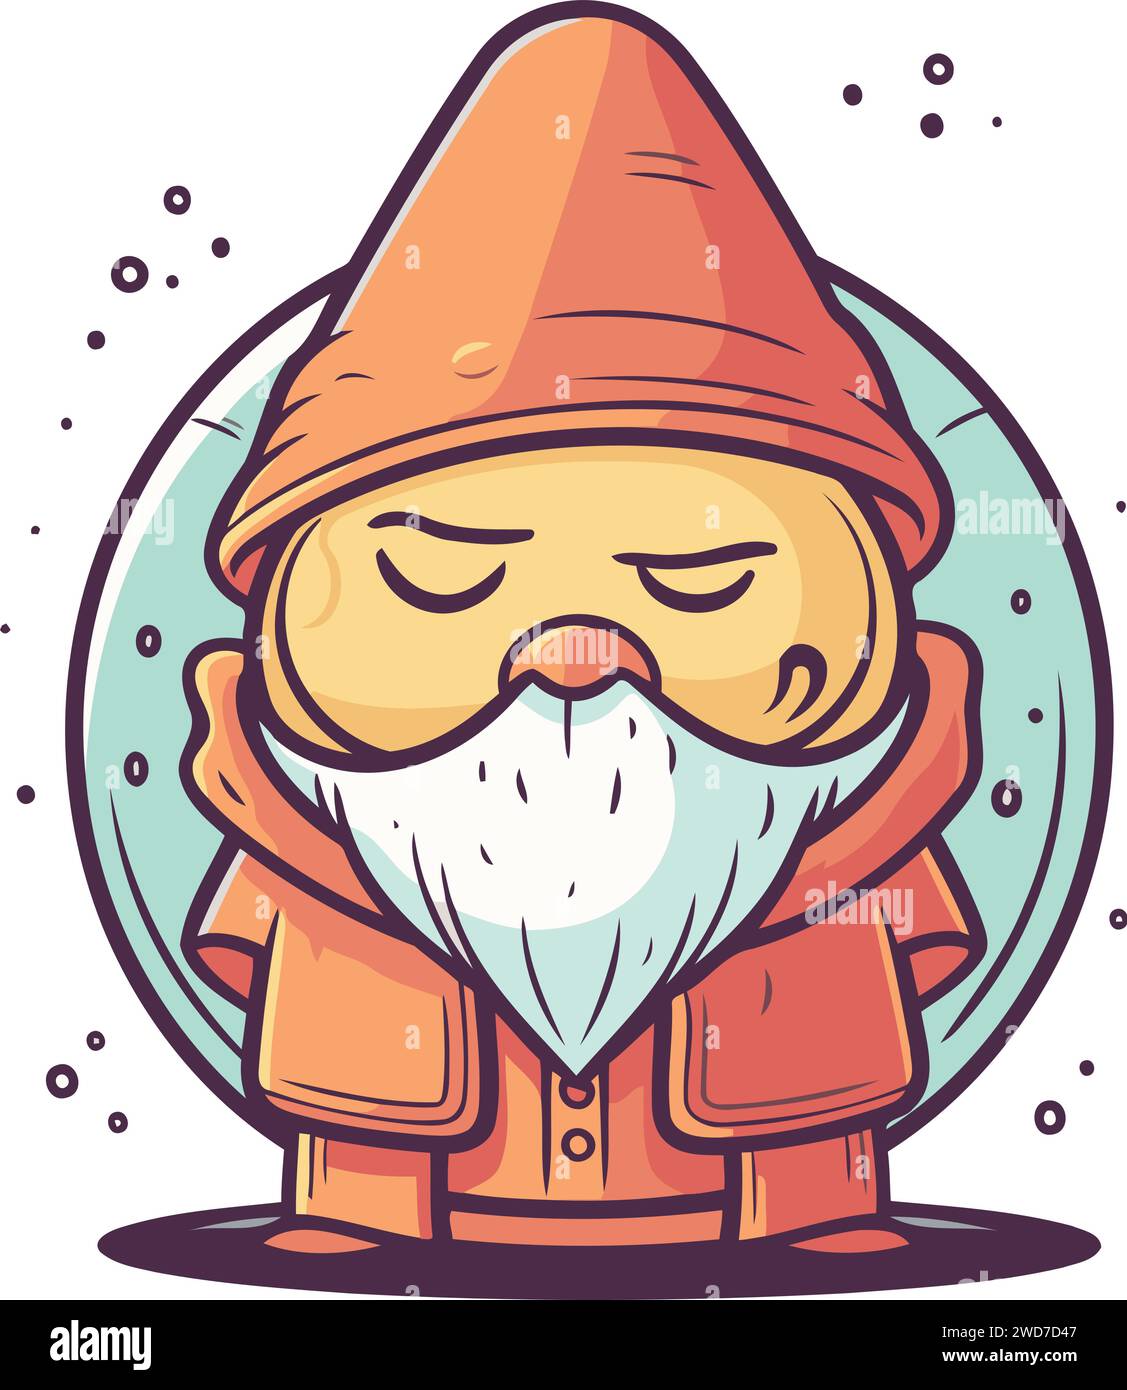 Simpatico personaggio di GNOME dei cartoni animati. Illustrazione vettoriale di uno gnomo. Illustrazione Vettoriale